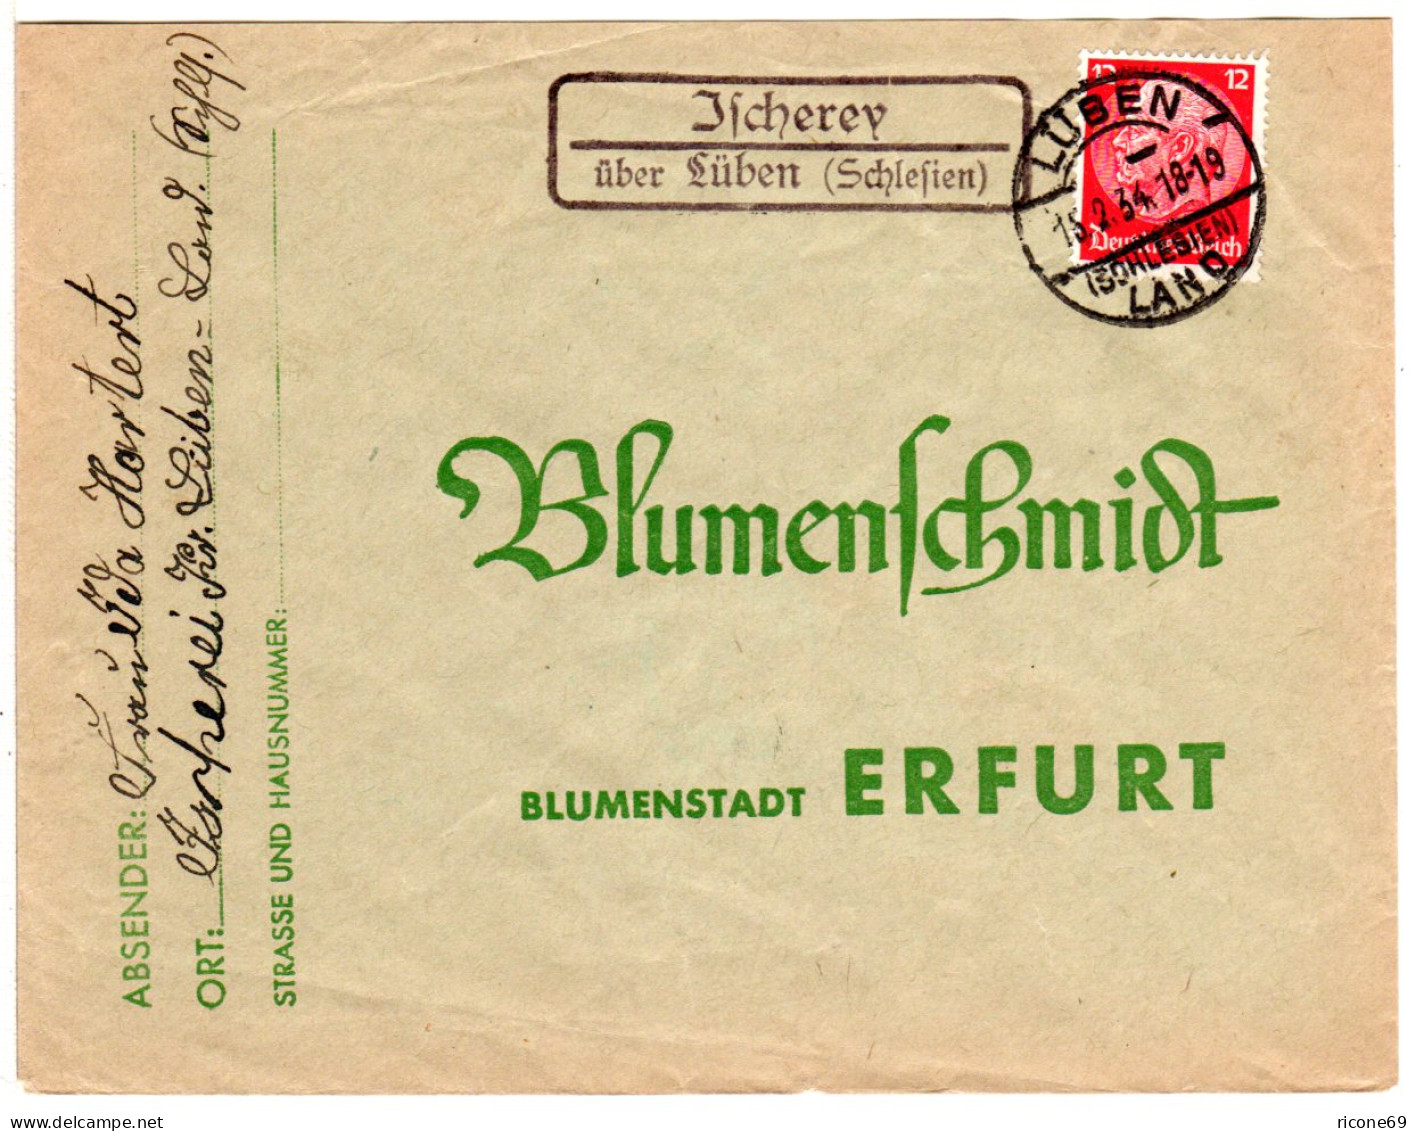 DR 1934, Landpost Stpl. Ischerey über Lüben (Schlesien) Auf Brief M. 12 Pfg. - Briefe U. Dokumente